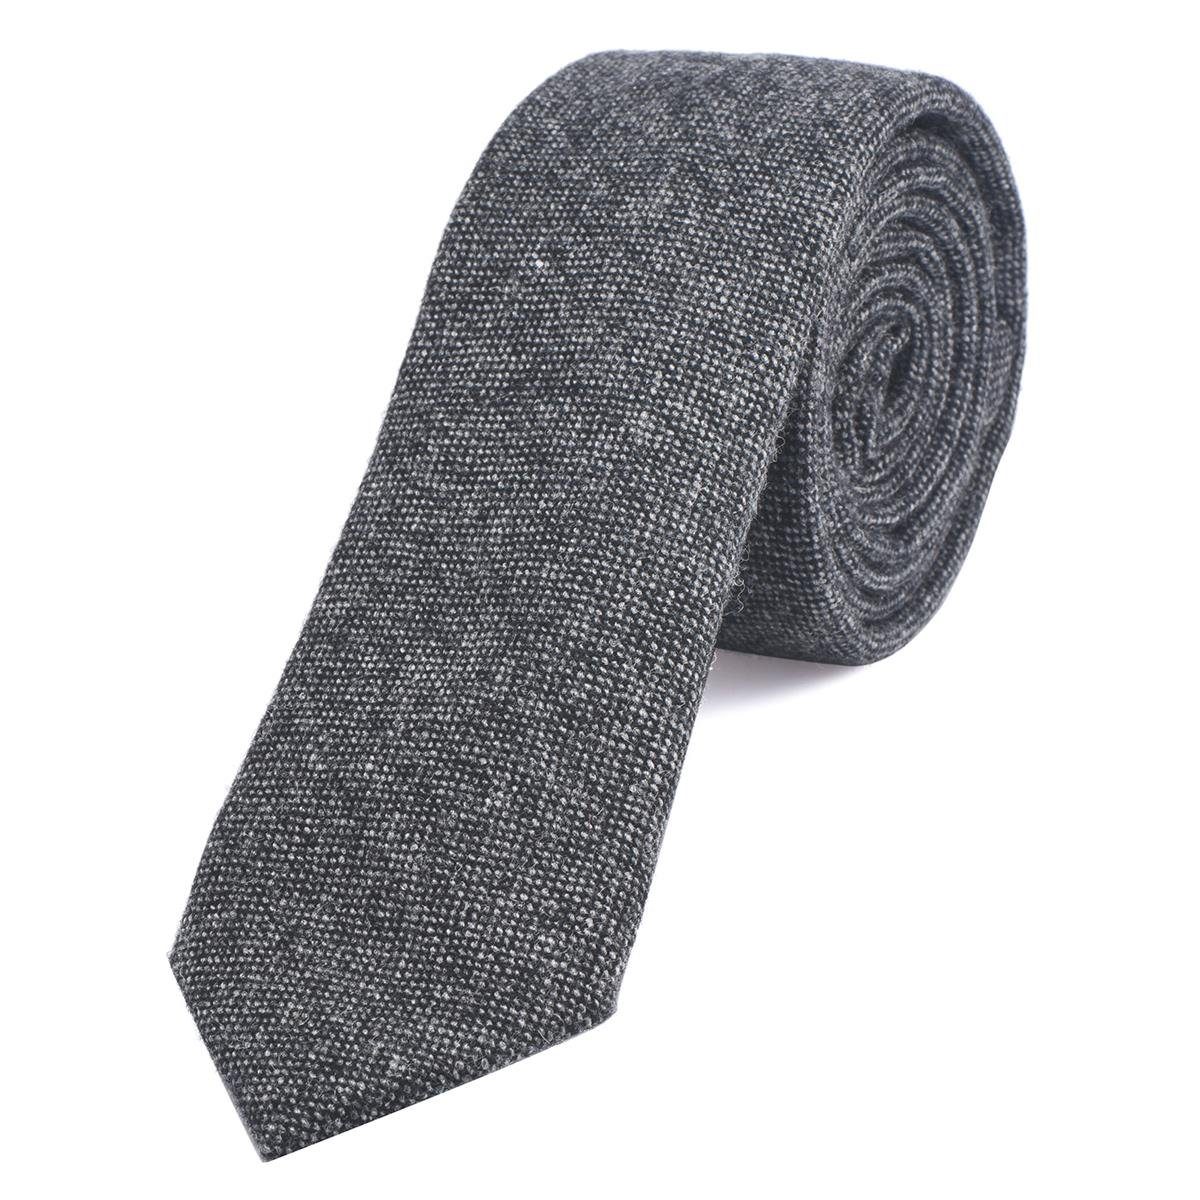 Büro festliche Krawatte) verschiedene (Packung, für oder schwarz-grau gepunkt Veranstaltungen Herren Baumwolle, und kariert 6 cm 1x Krawatte Muster, Krawatte DonDon einfarbig 1-St.,